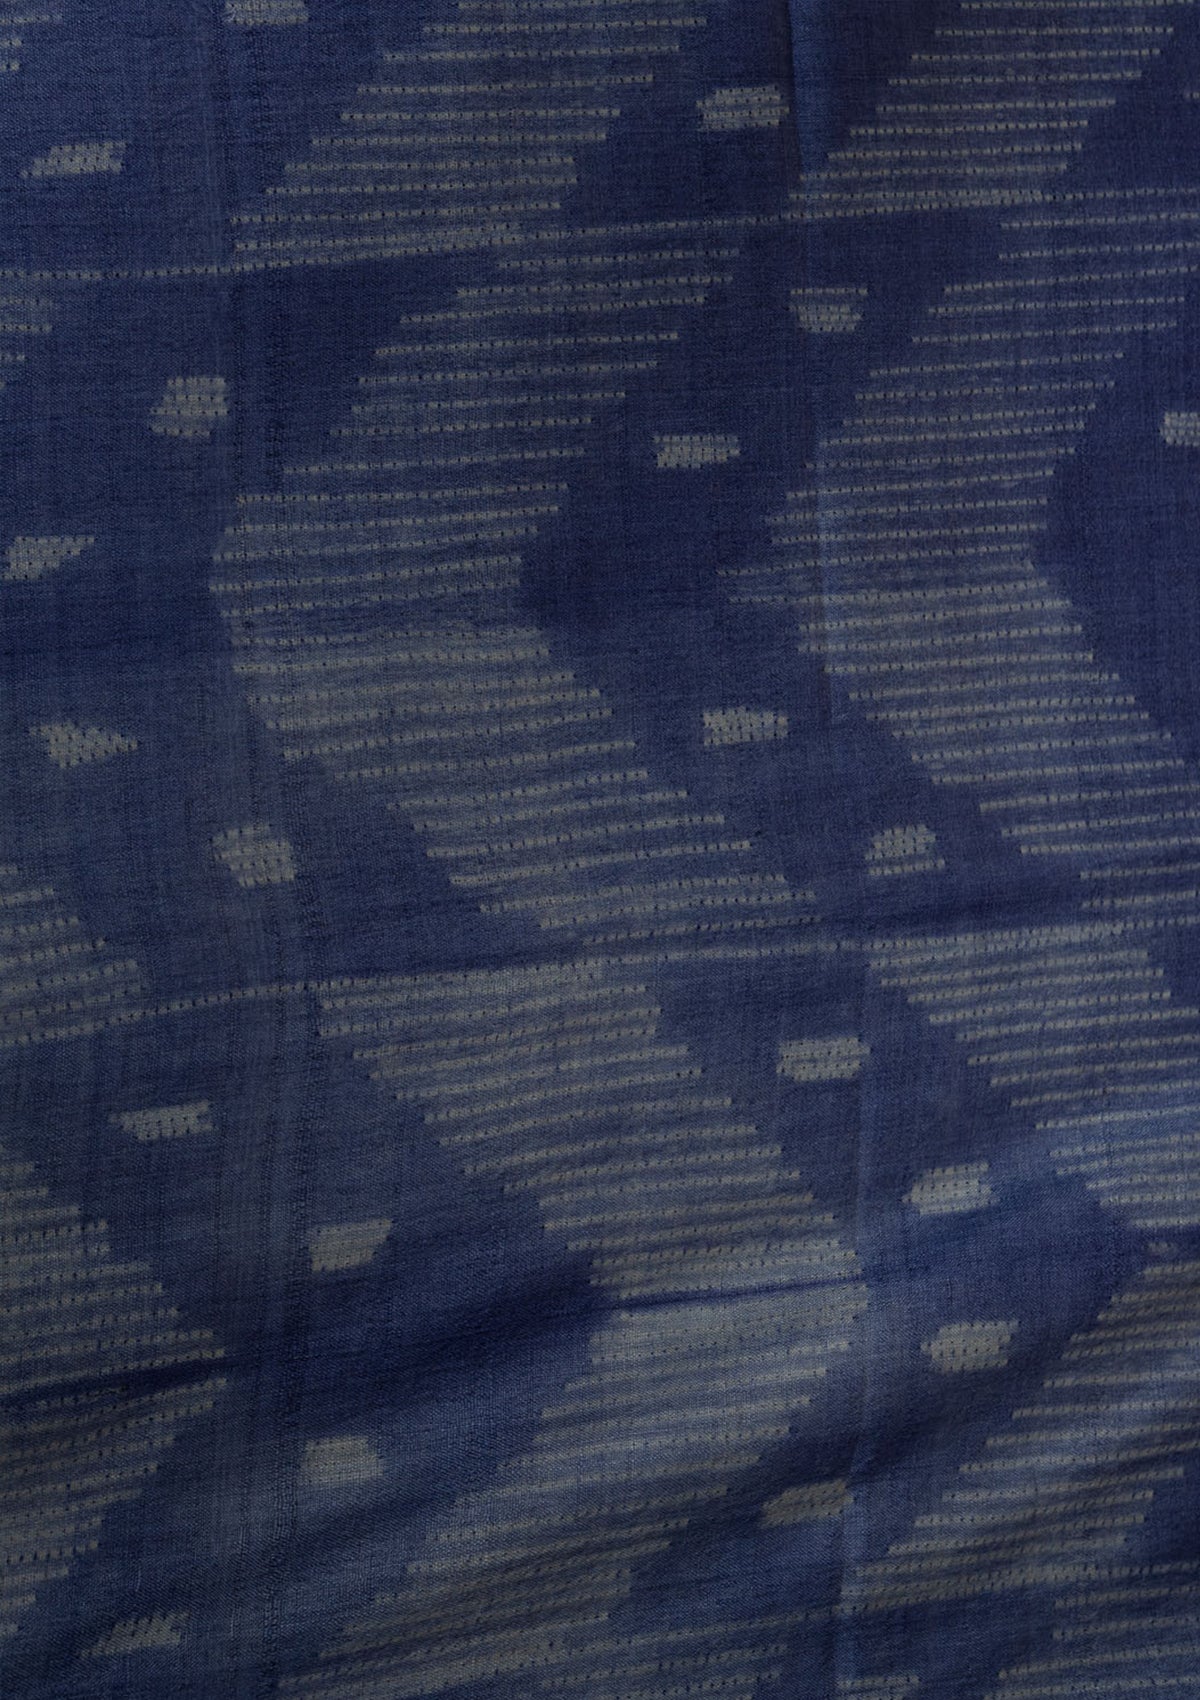 Handwoven Indigo Blue Shibori Fabric